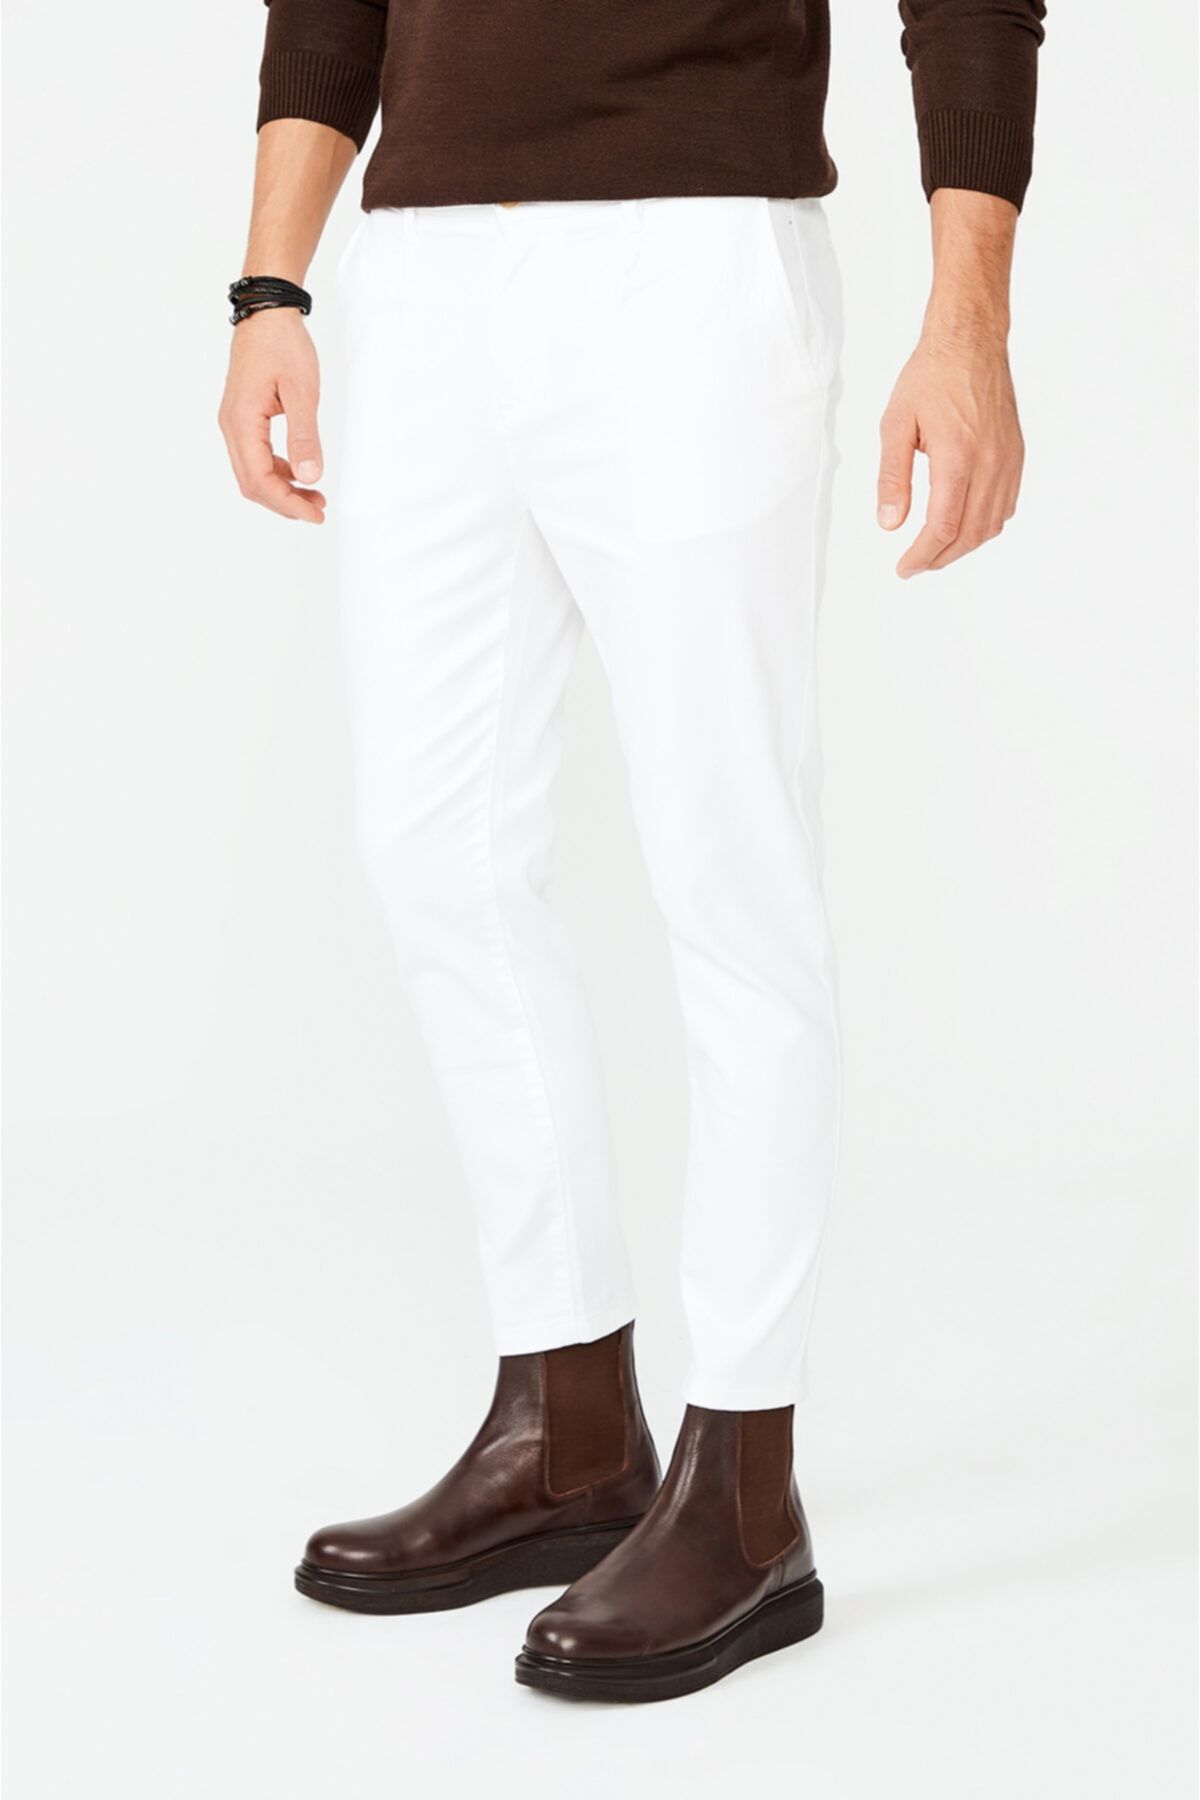 Avva Erkek Beyaz Yandan Cepli Pileli Düz Slim Fit Pantolon A02y3026